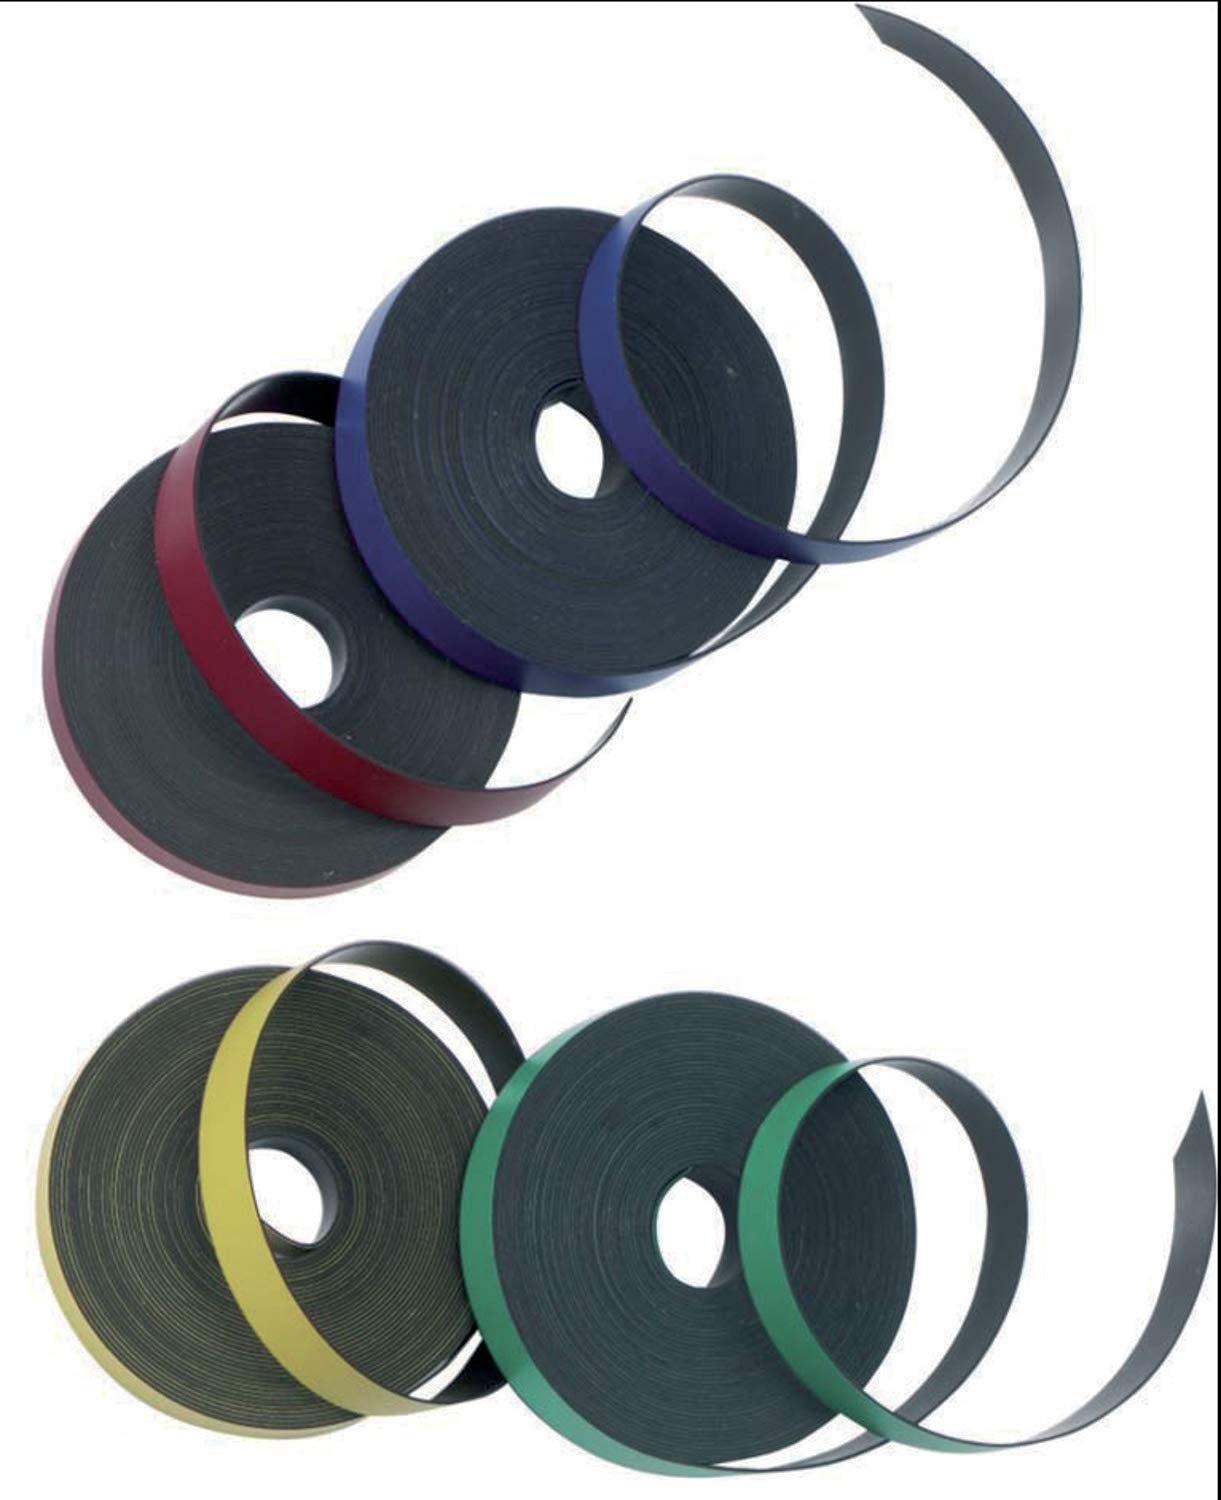 ACCO Nobo selbstklebendes Magnetband Zuschneidbar auf die gewünschte Größe In 4 verschiedenen Farben erhältlich Sortiert